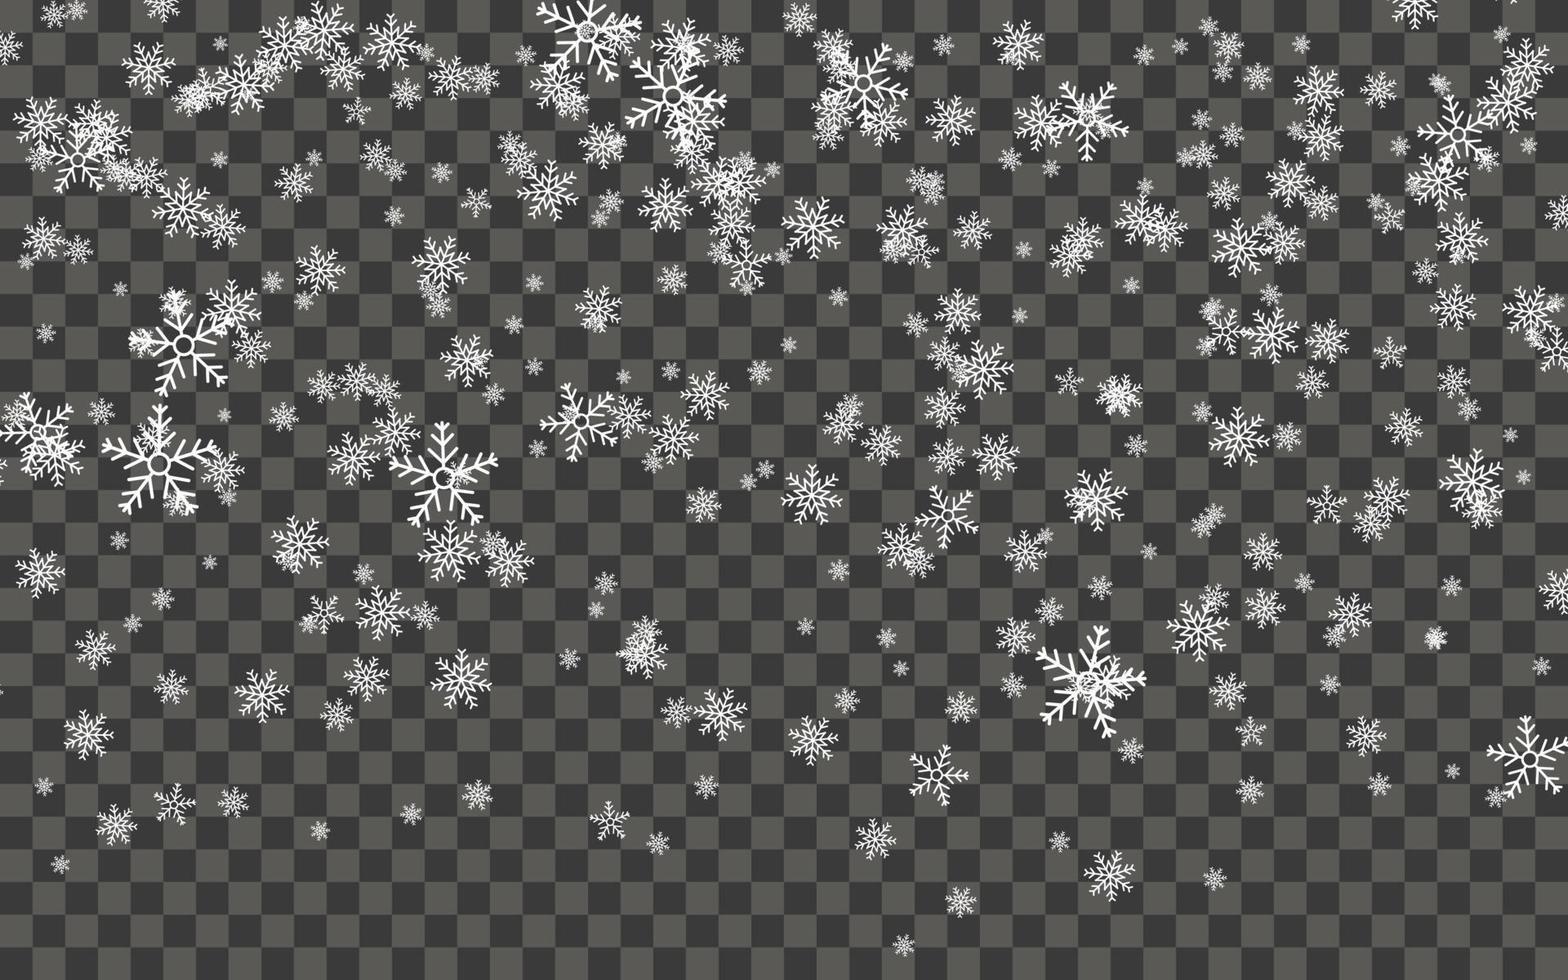 chutes de neige et flocons de neige tombant sur fond transparent foncé. flocons de neige blancs et neige de noël. illustration vectorielle vecteur